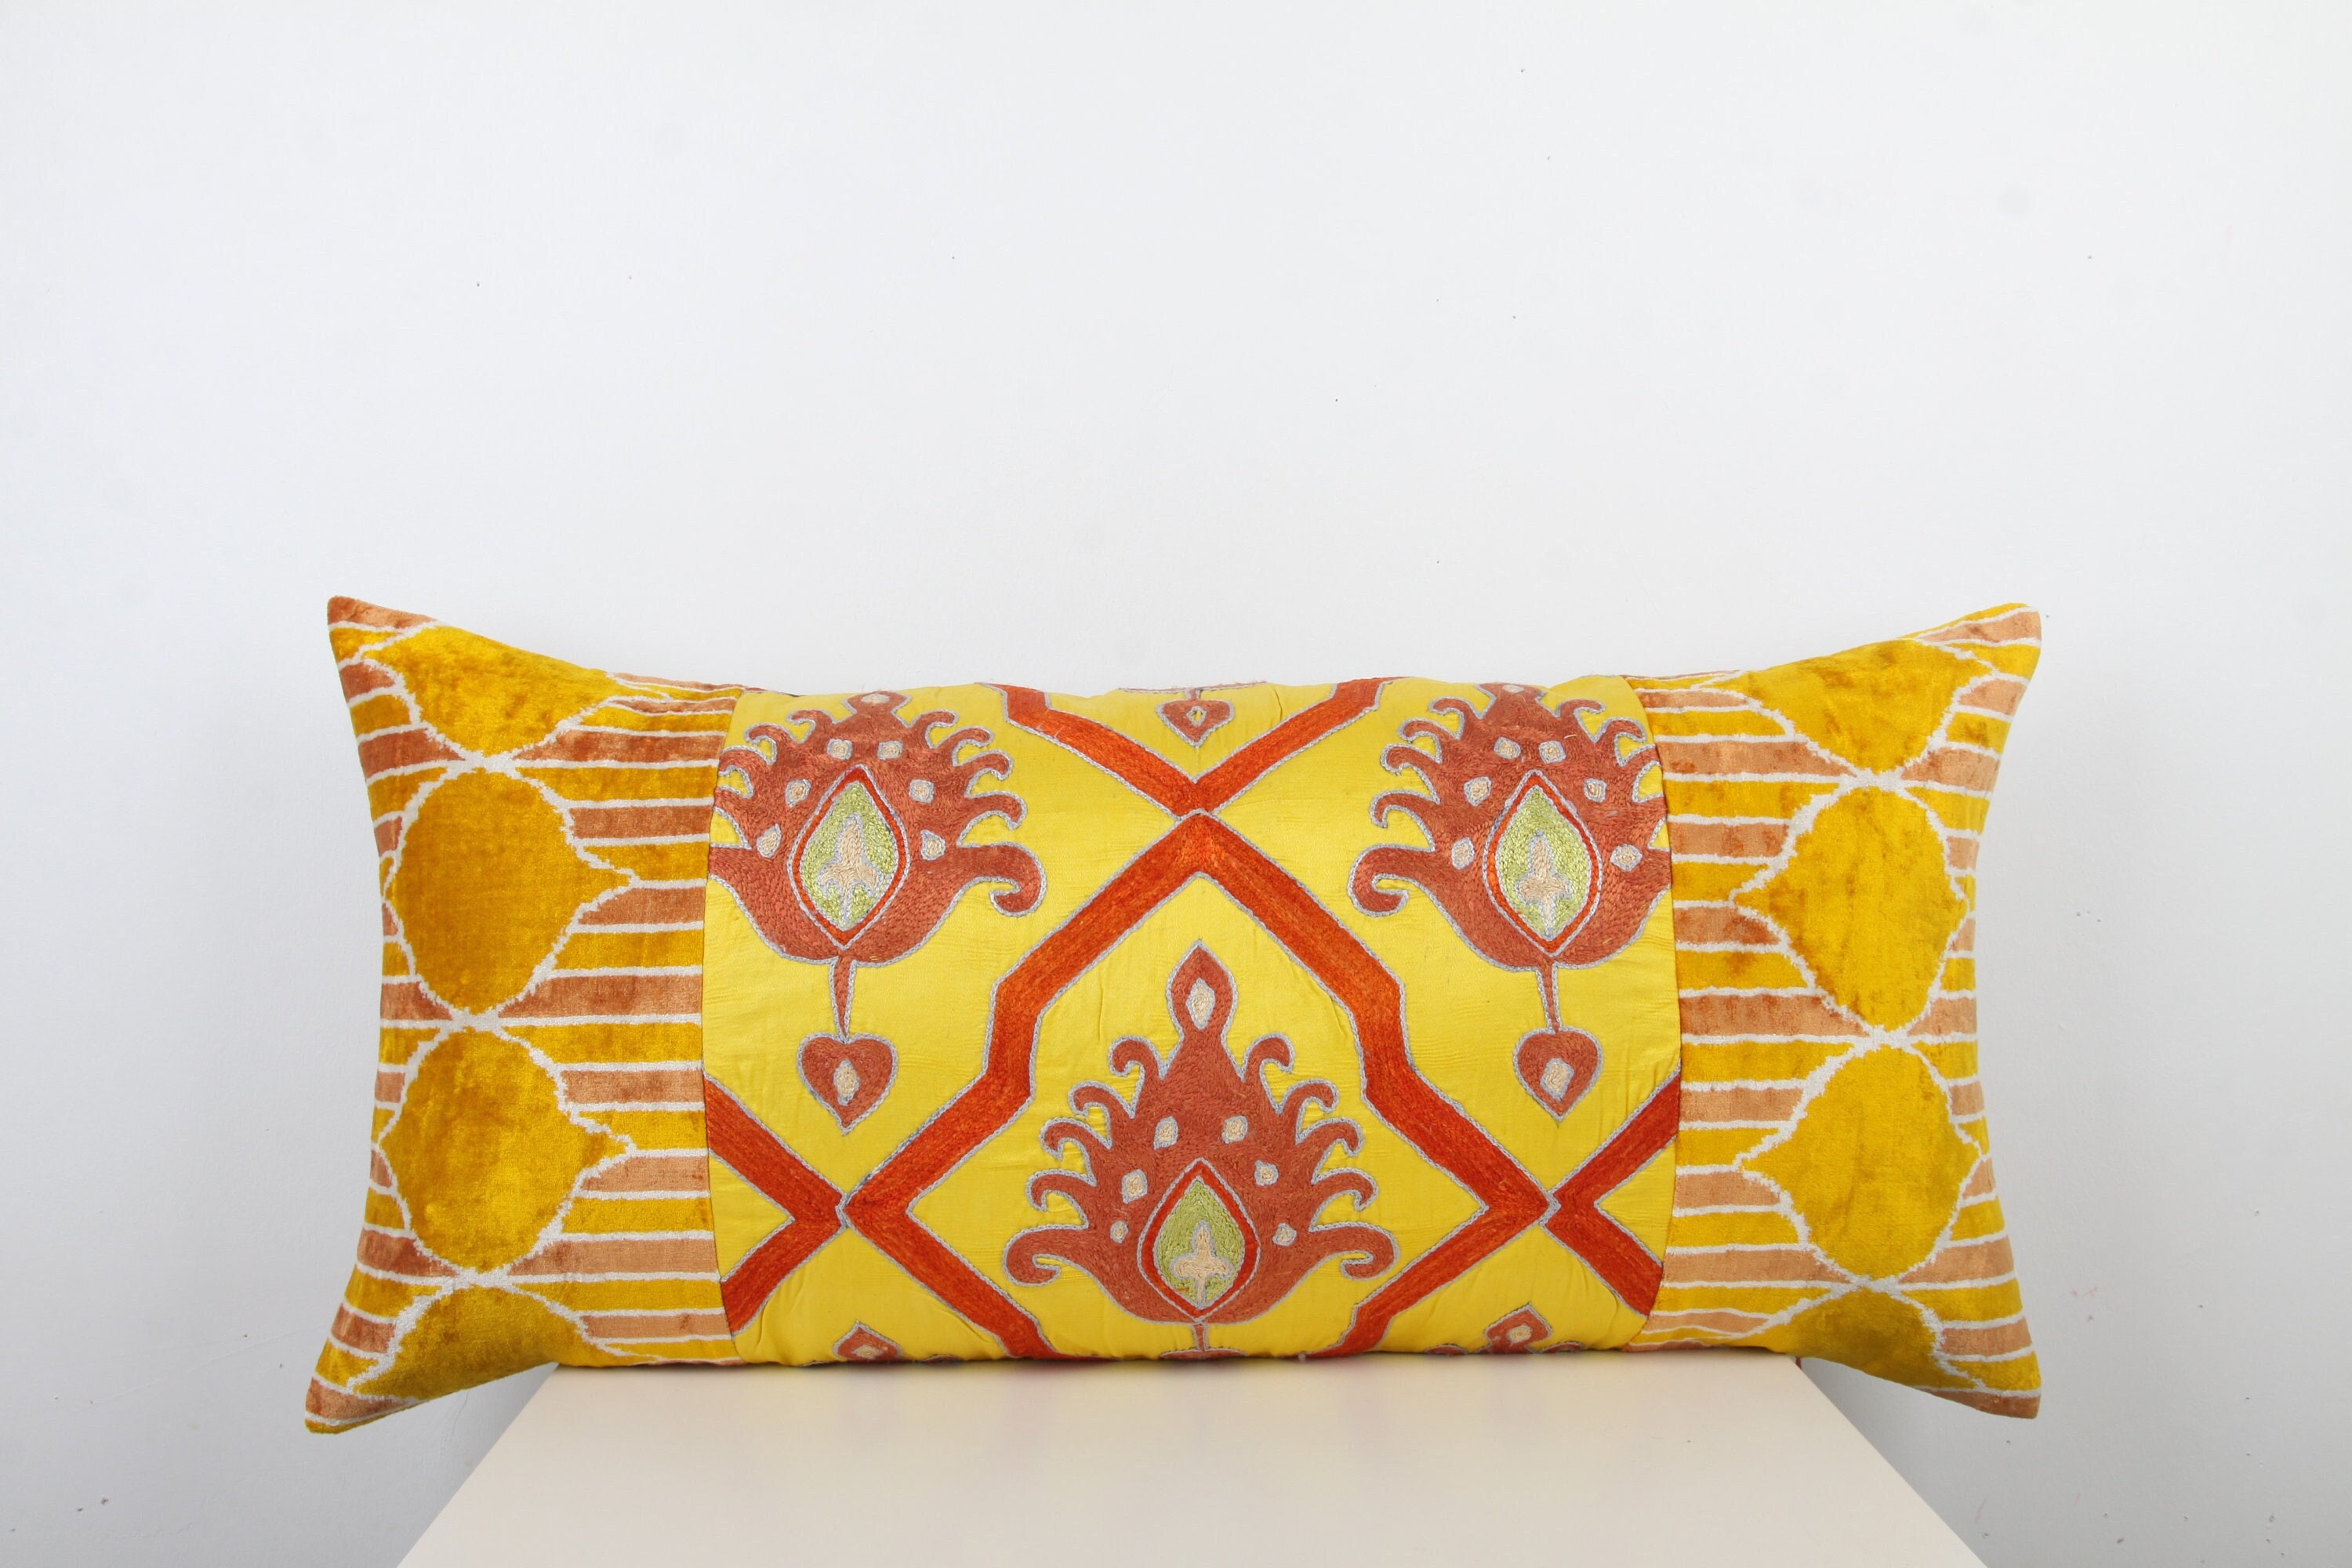 Ethnic Suzani Pillows Indian Outdoor Cushion Cover Vintage Home Decor Boho Throw